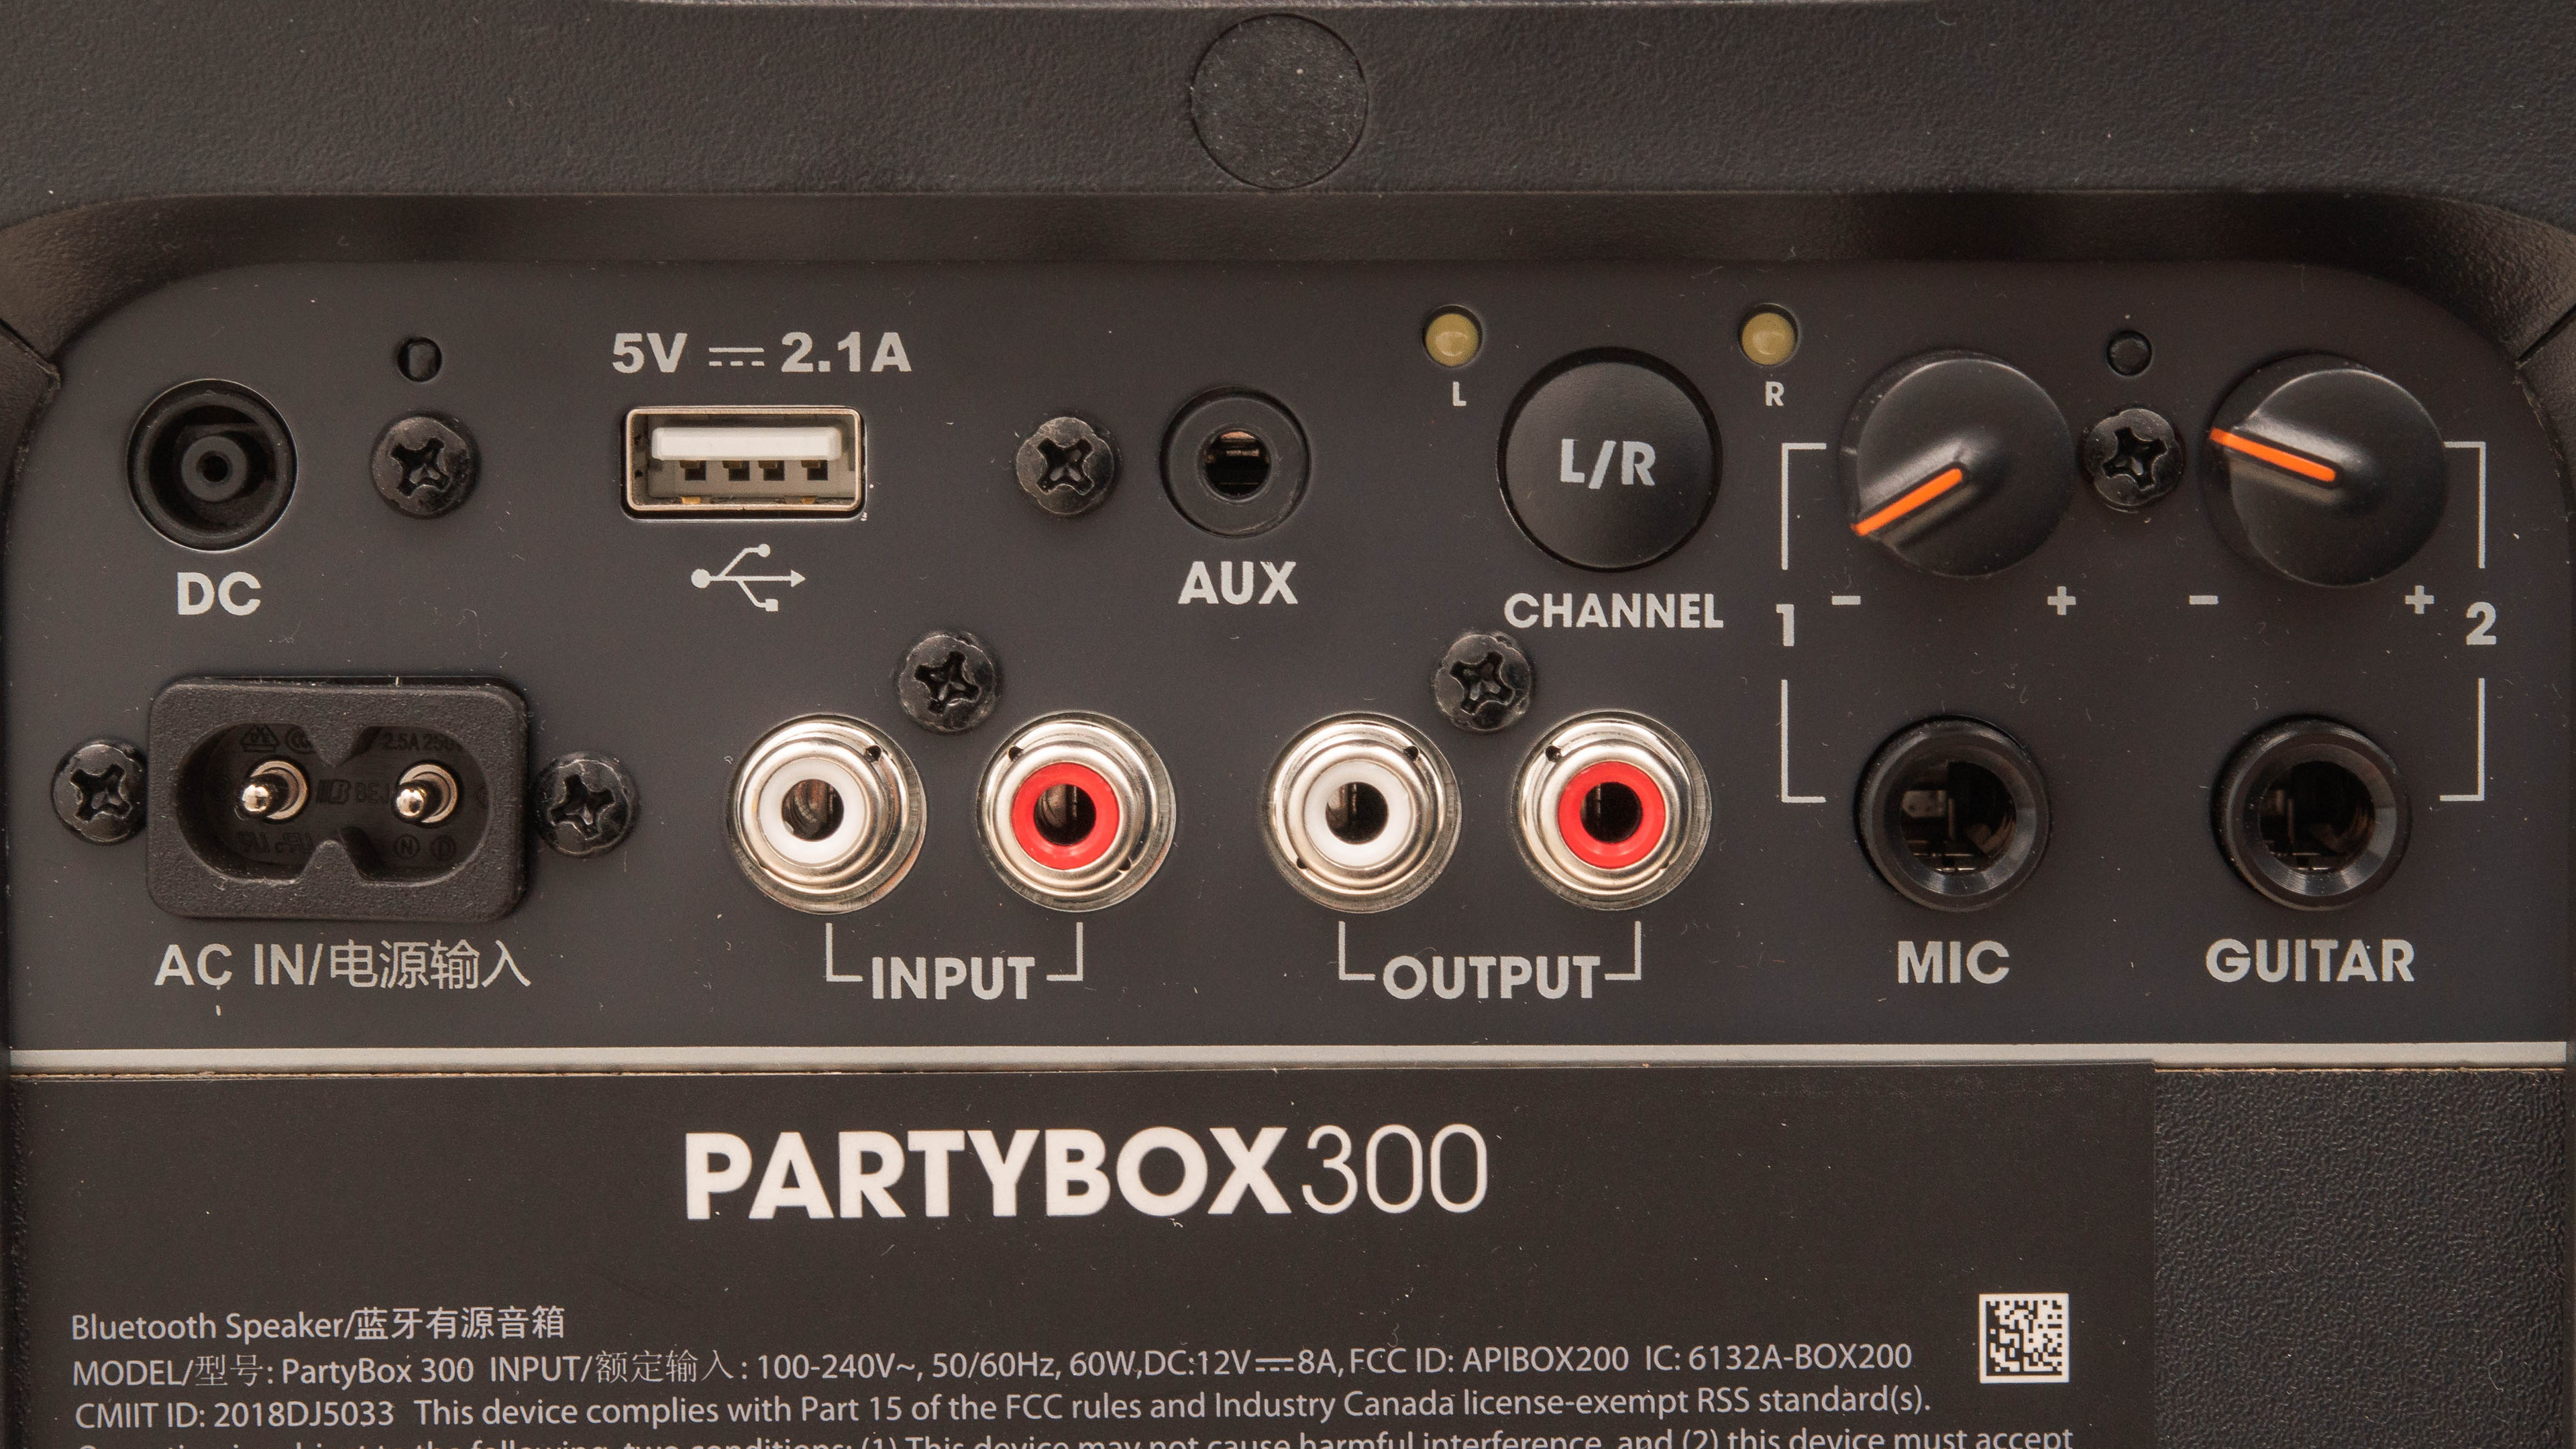 JBL Partybox 300